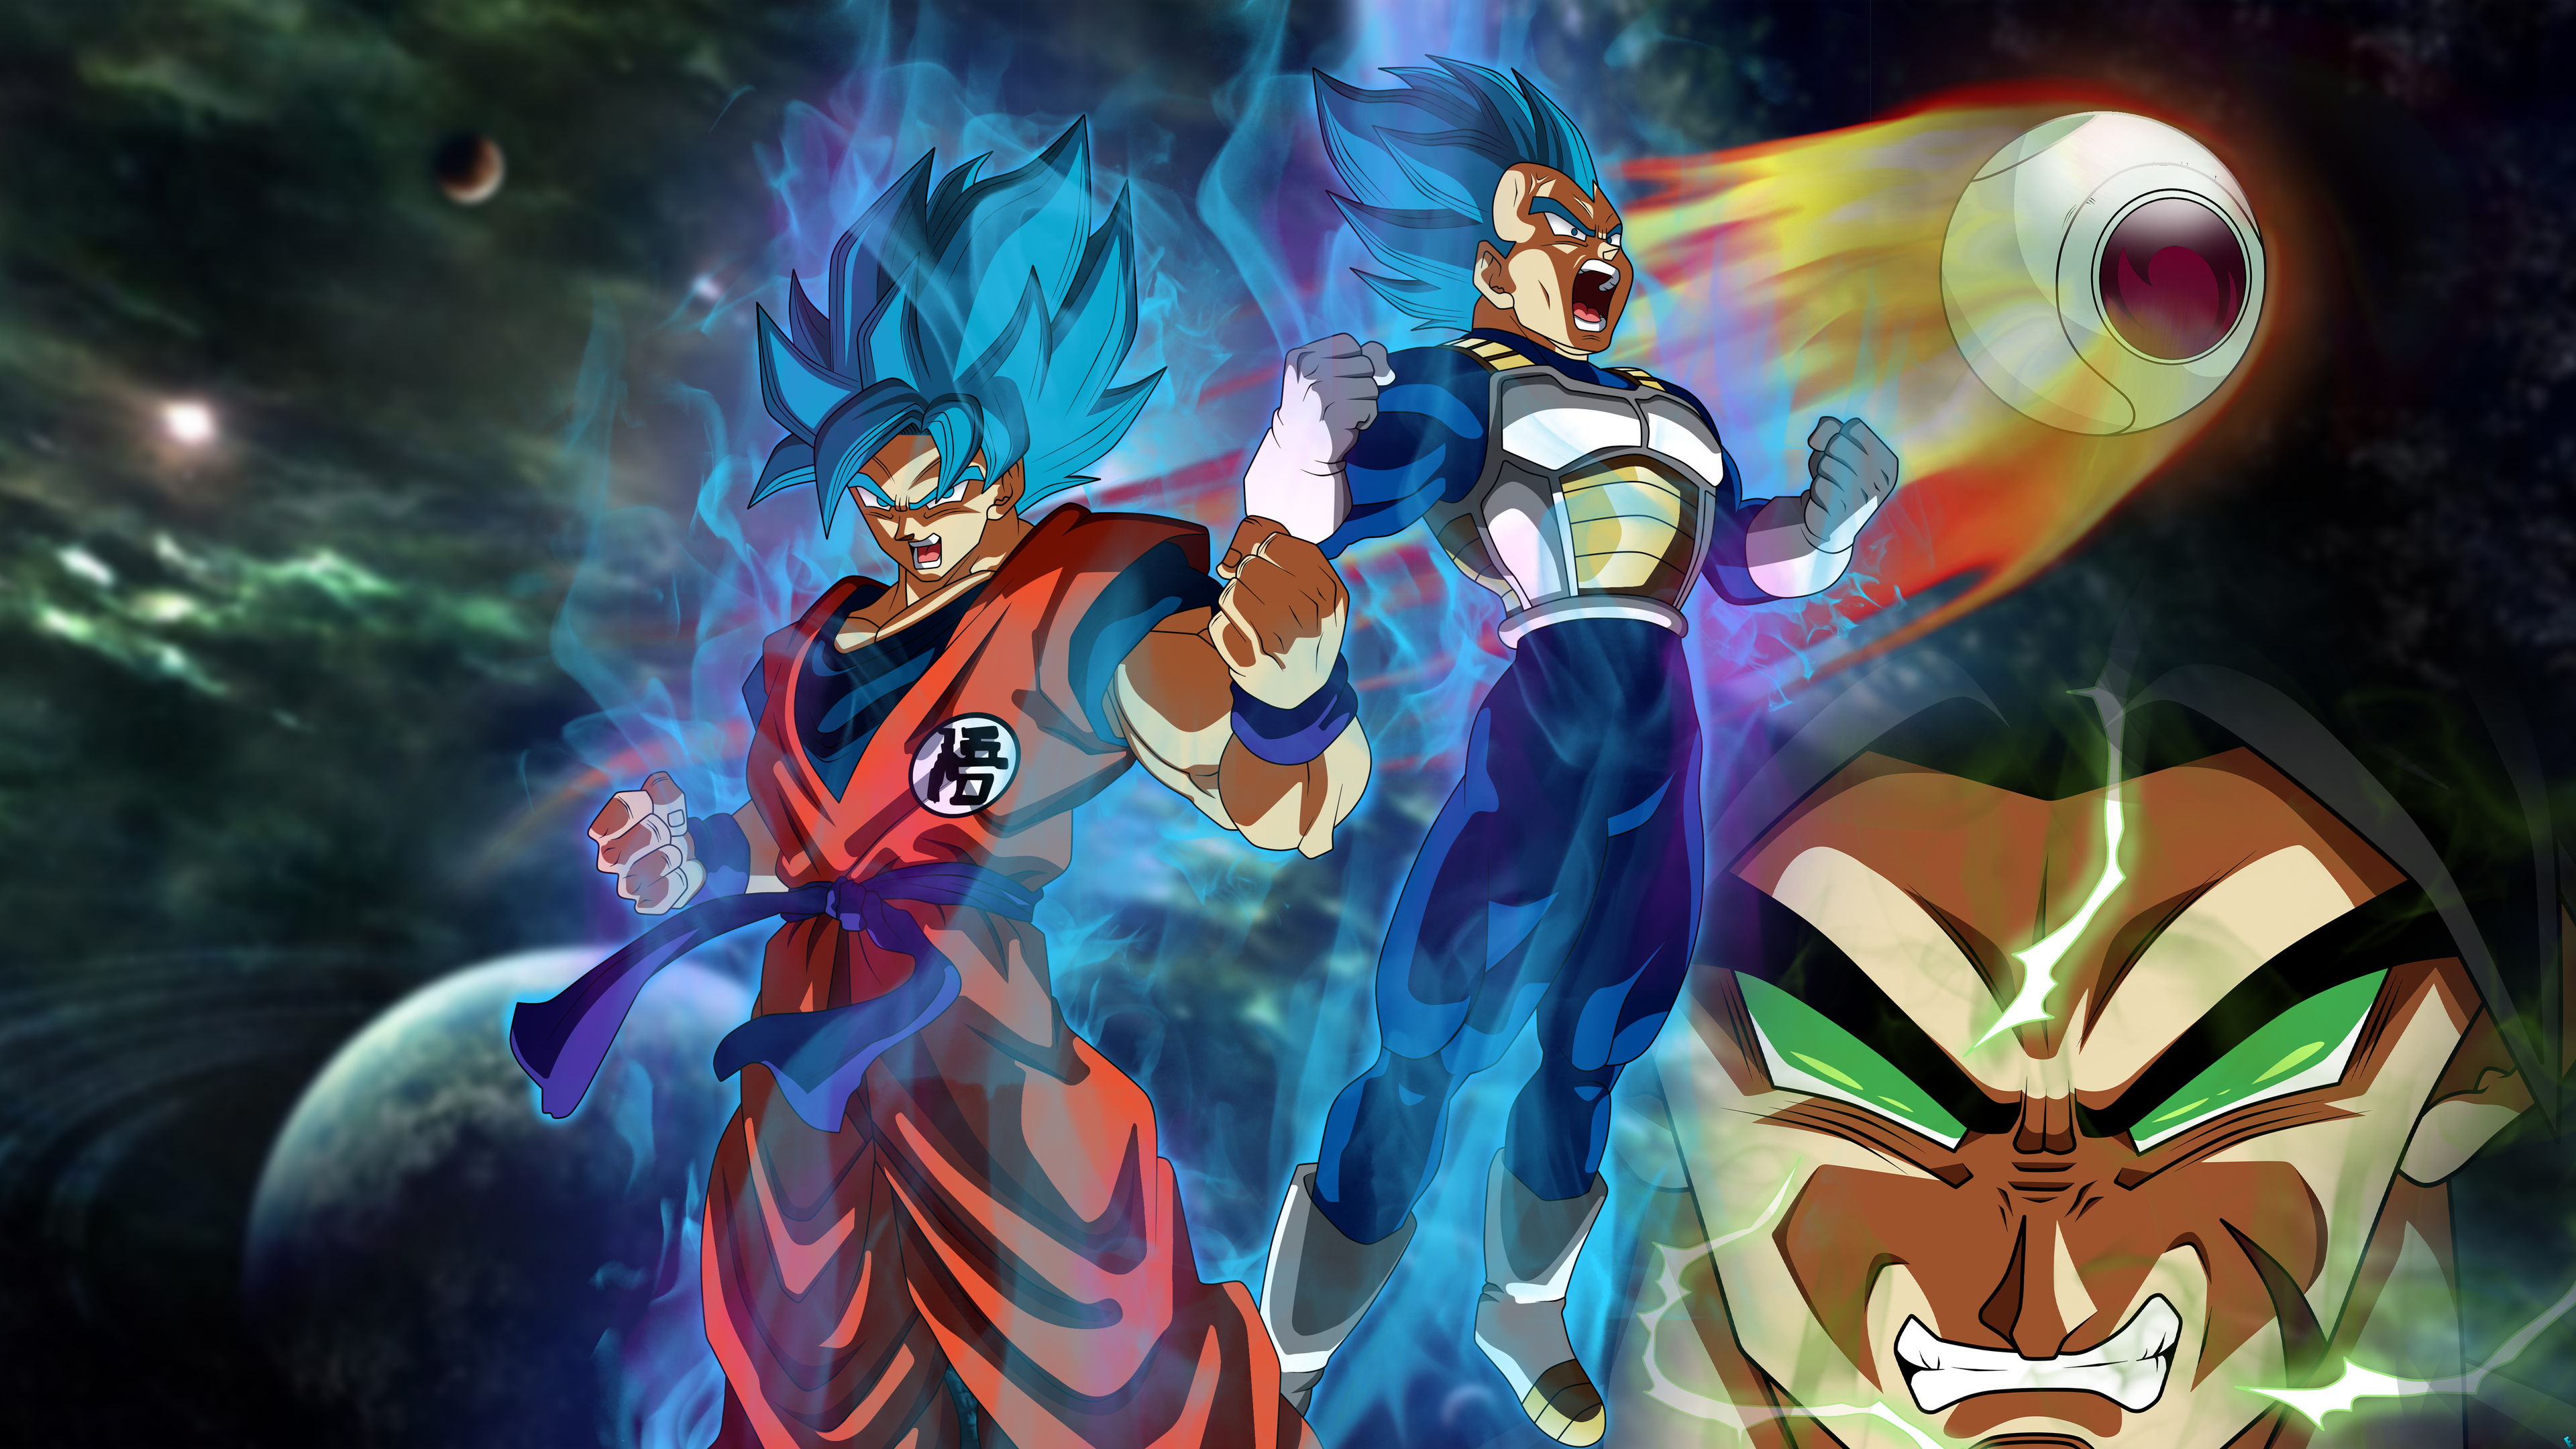 Biểu tượng của sức mạnh và tình bạn không thể tốt hơn được phản ánh qua hình ảnh Goku và Vegeta đang đứng đôi vai bên nhau. Chiếc điện thoại của bạn sẽ được cập nhật với hình nền này, làm bạn cảm thấy tràn đầy sức mạnh và tình bạn của người Saiyan.